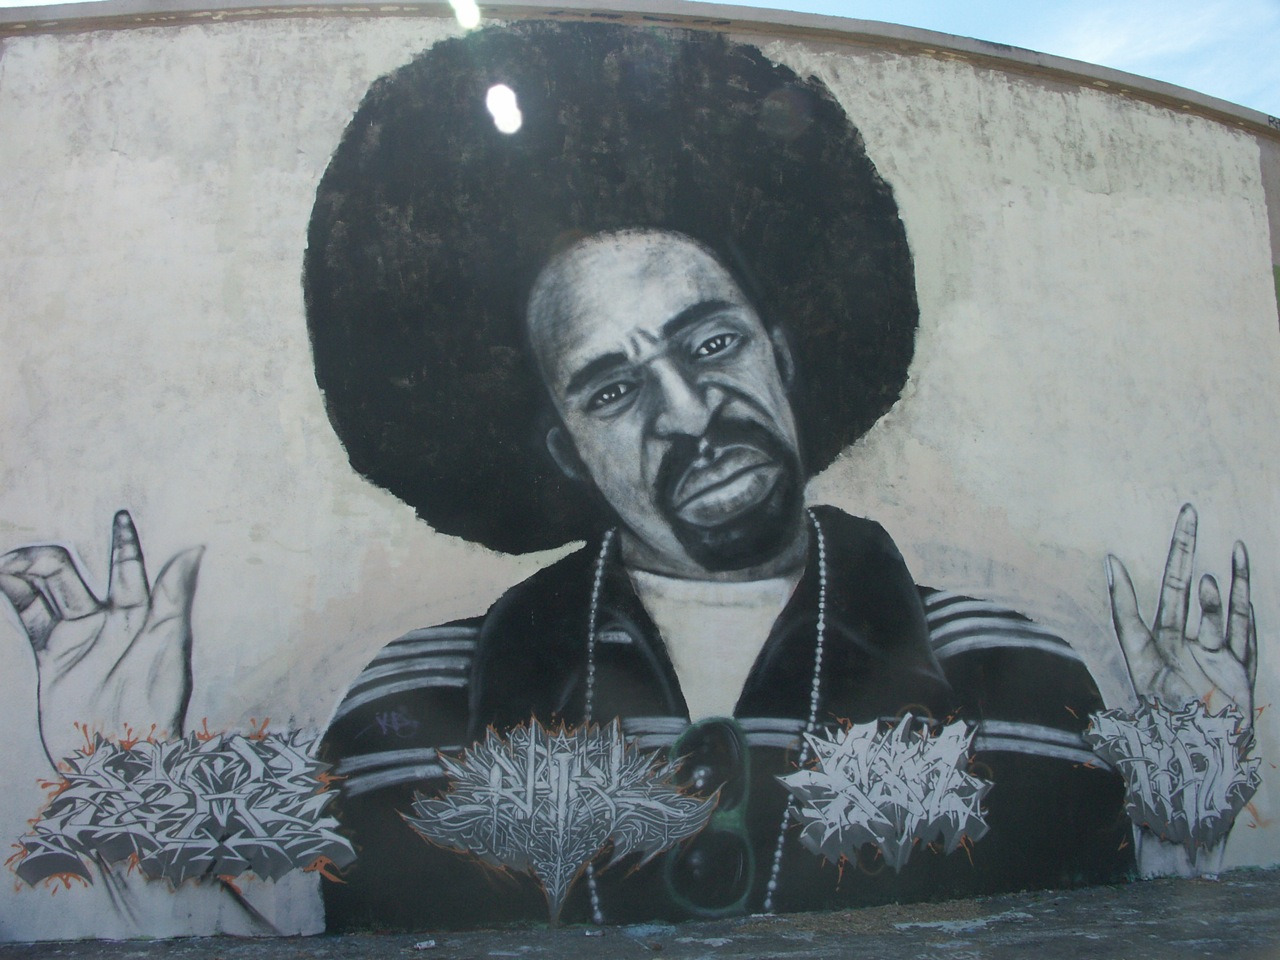 Vallejo, CA: A Mural of Bay Area legend, Mac Dre, on a Vallejo water tank